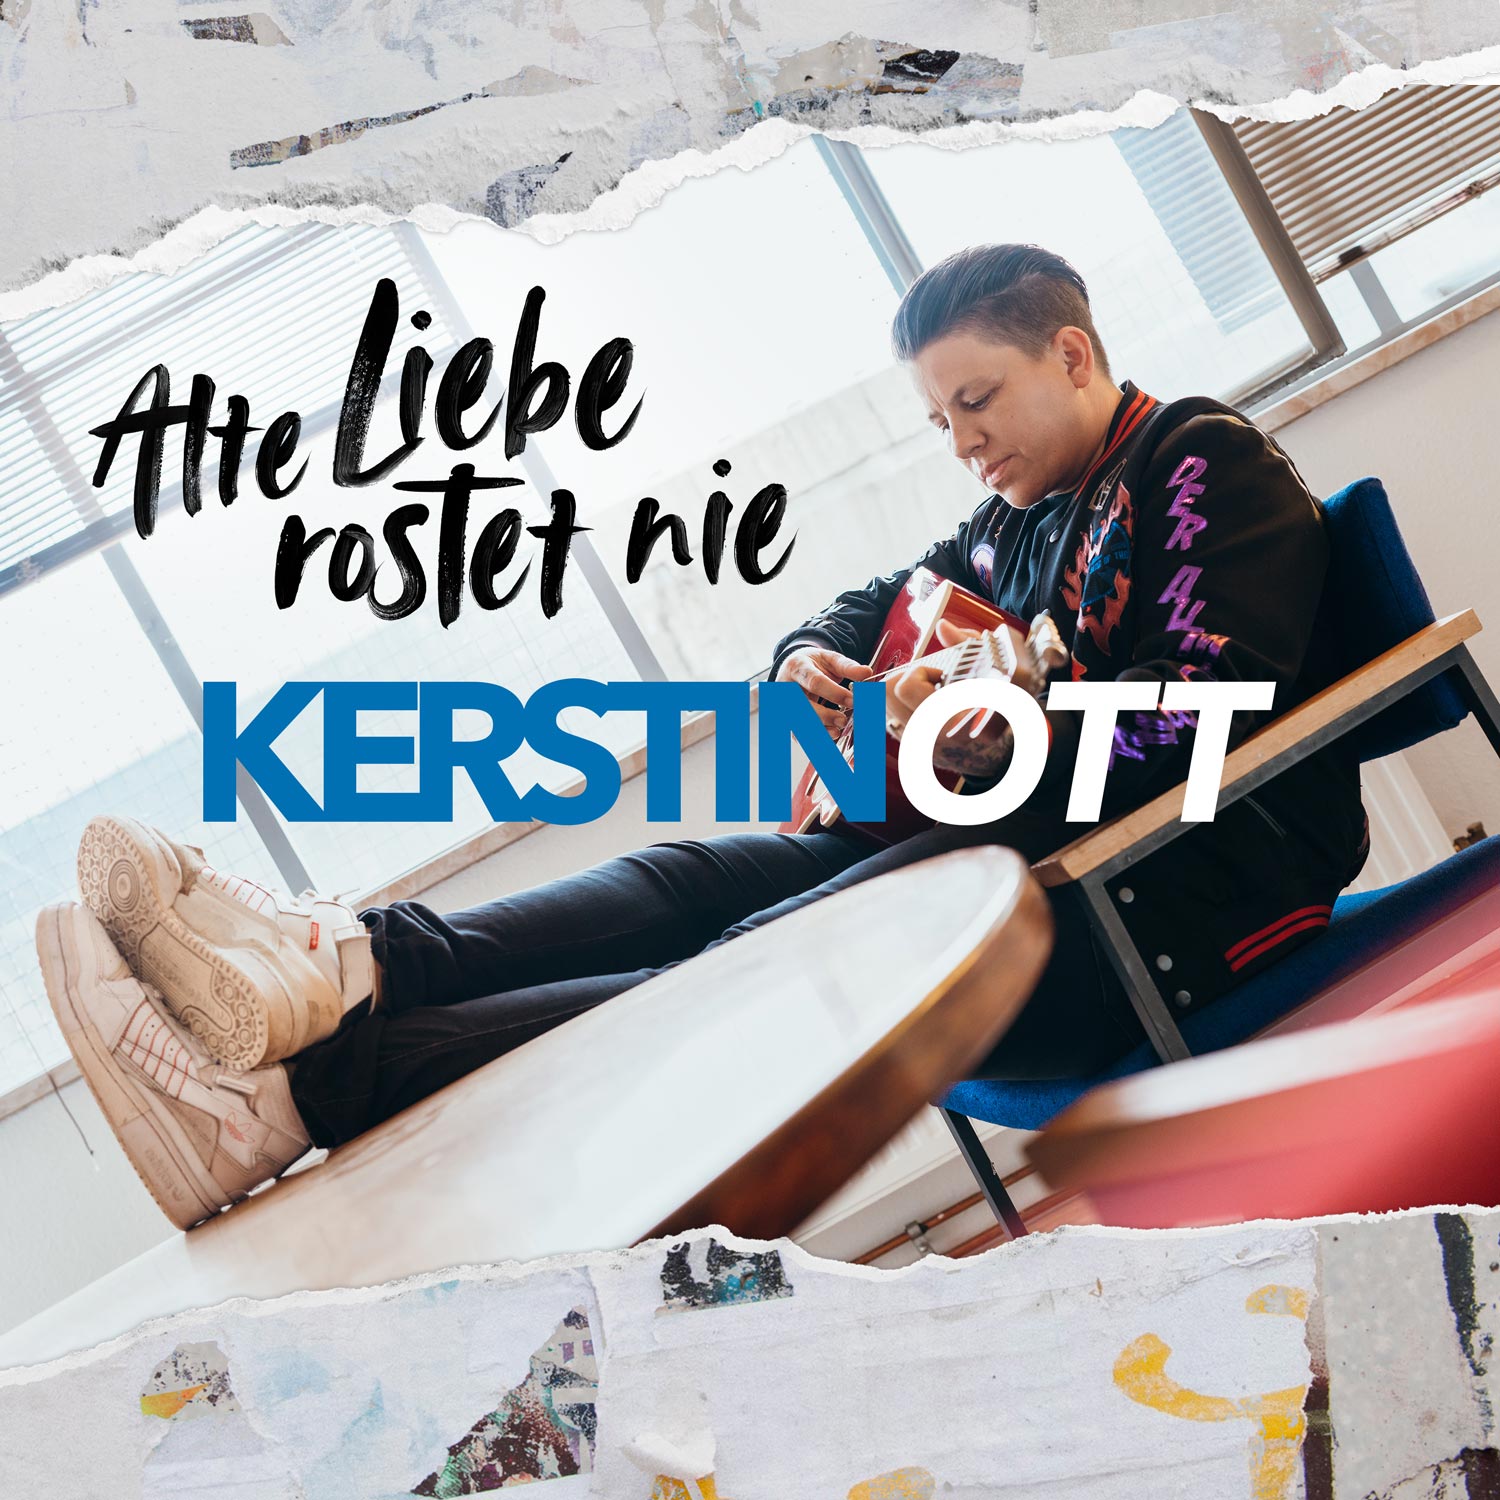 Kerstin Ott — Alte Liebe rostet nie cover artwork